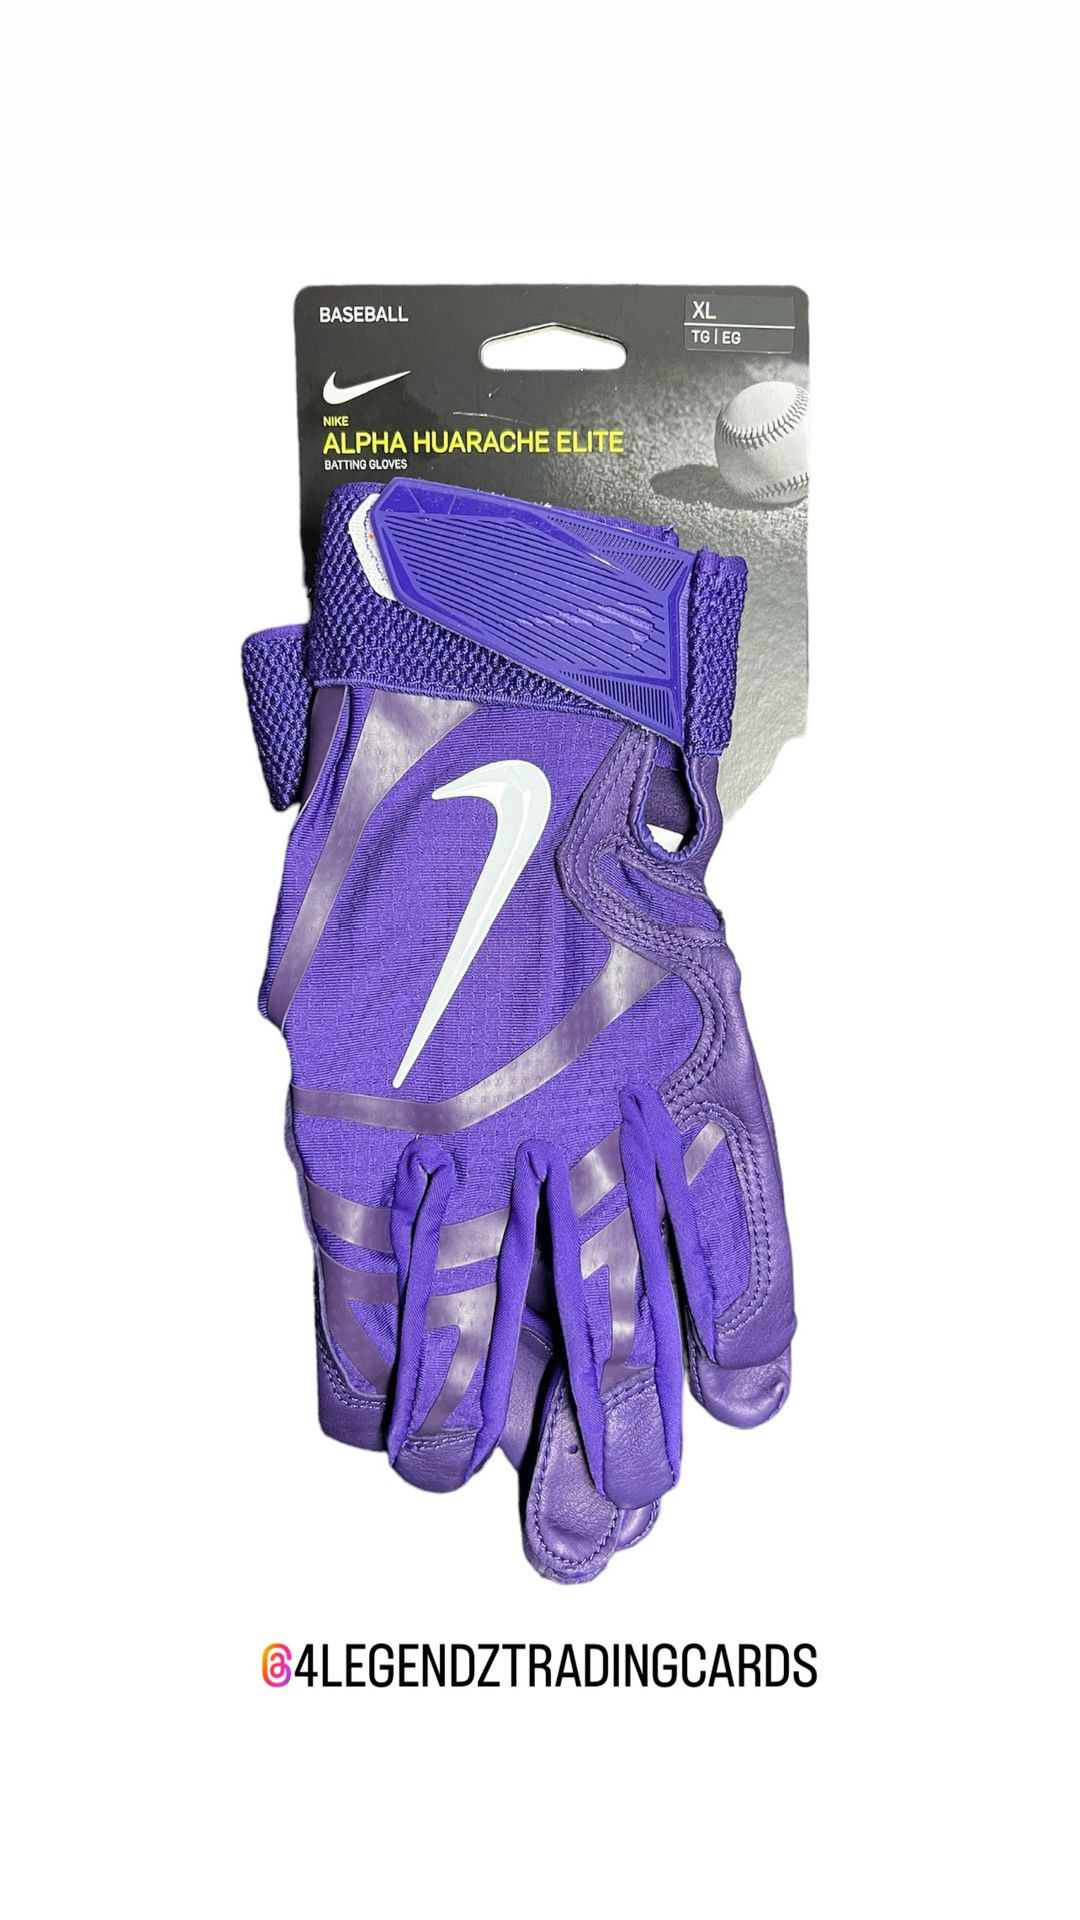 Nike Alpha Huarache Elite Batting Gloves Sz XL